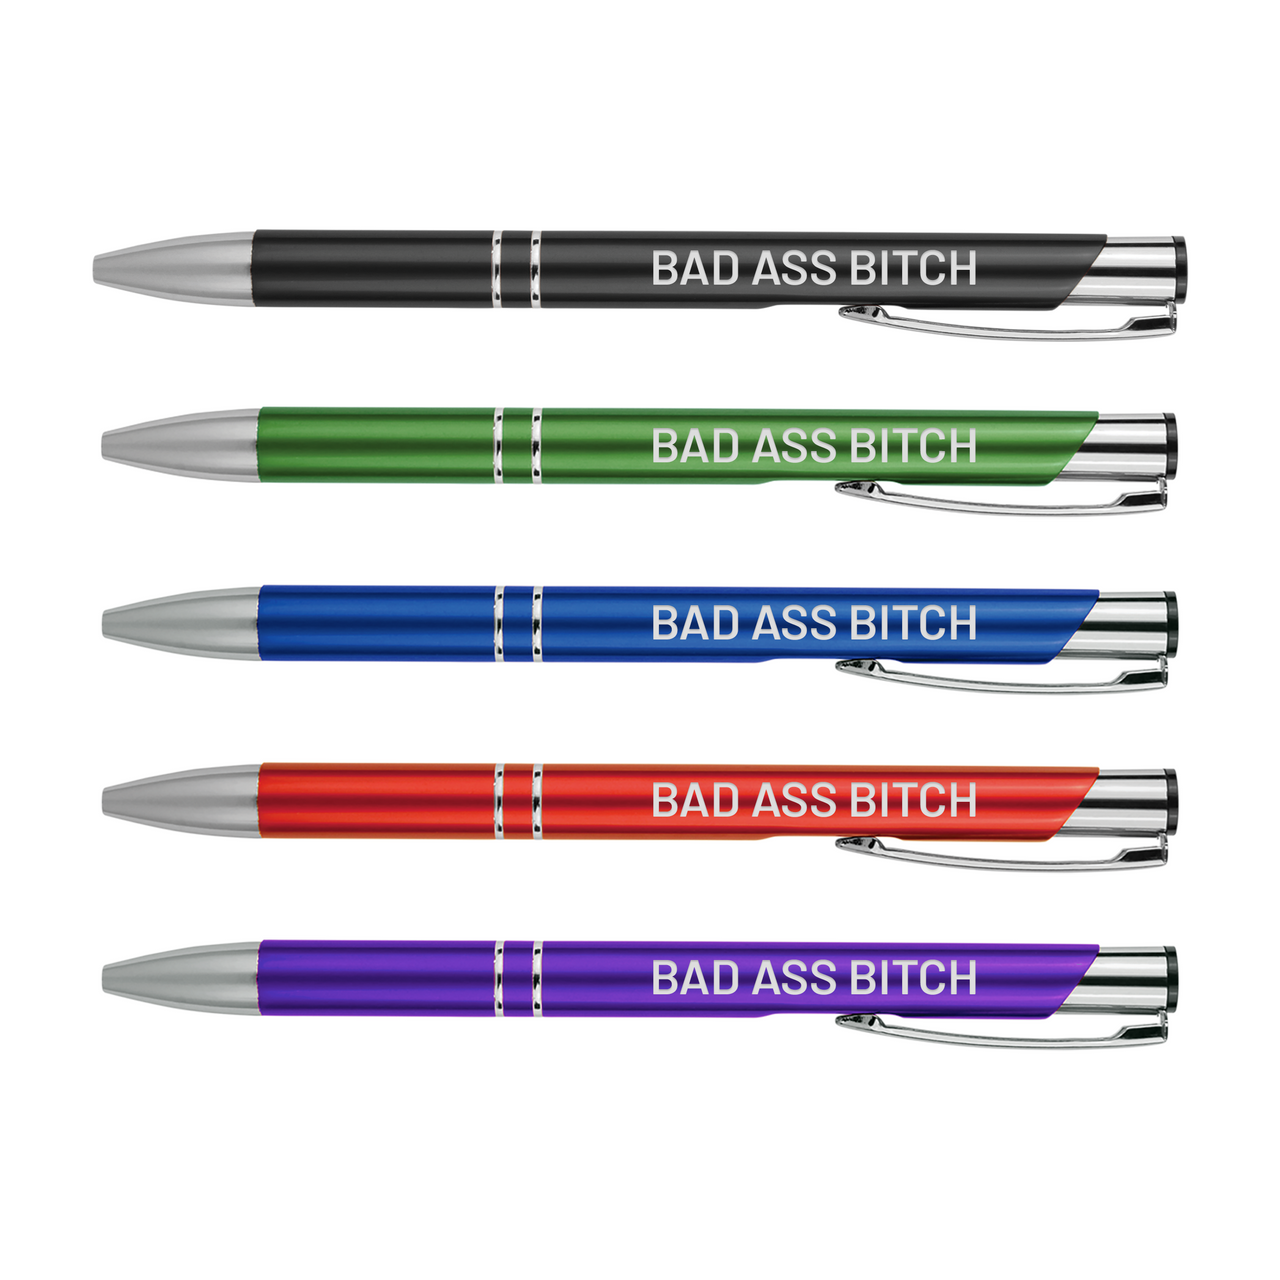 Bad Ass Bitch Metal Pens - Baum Designs